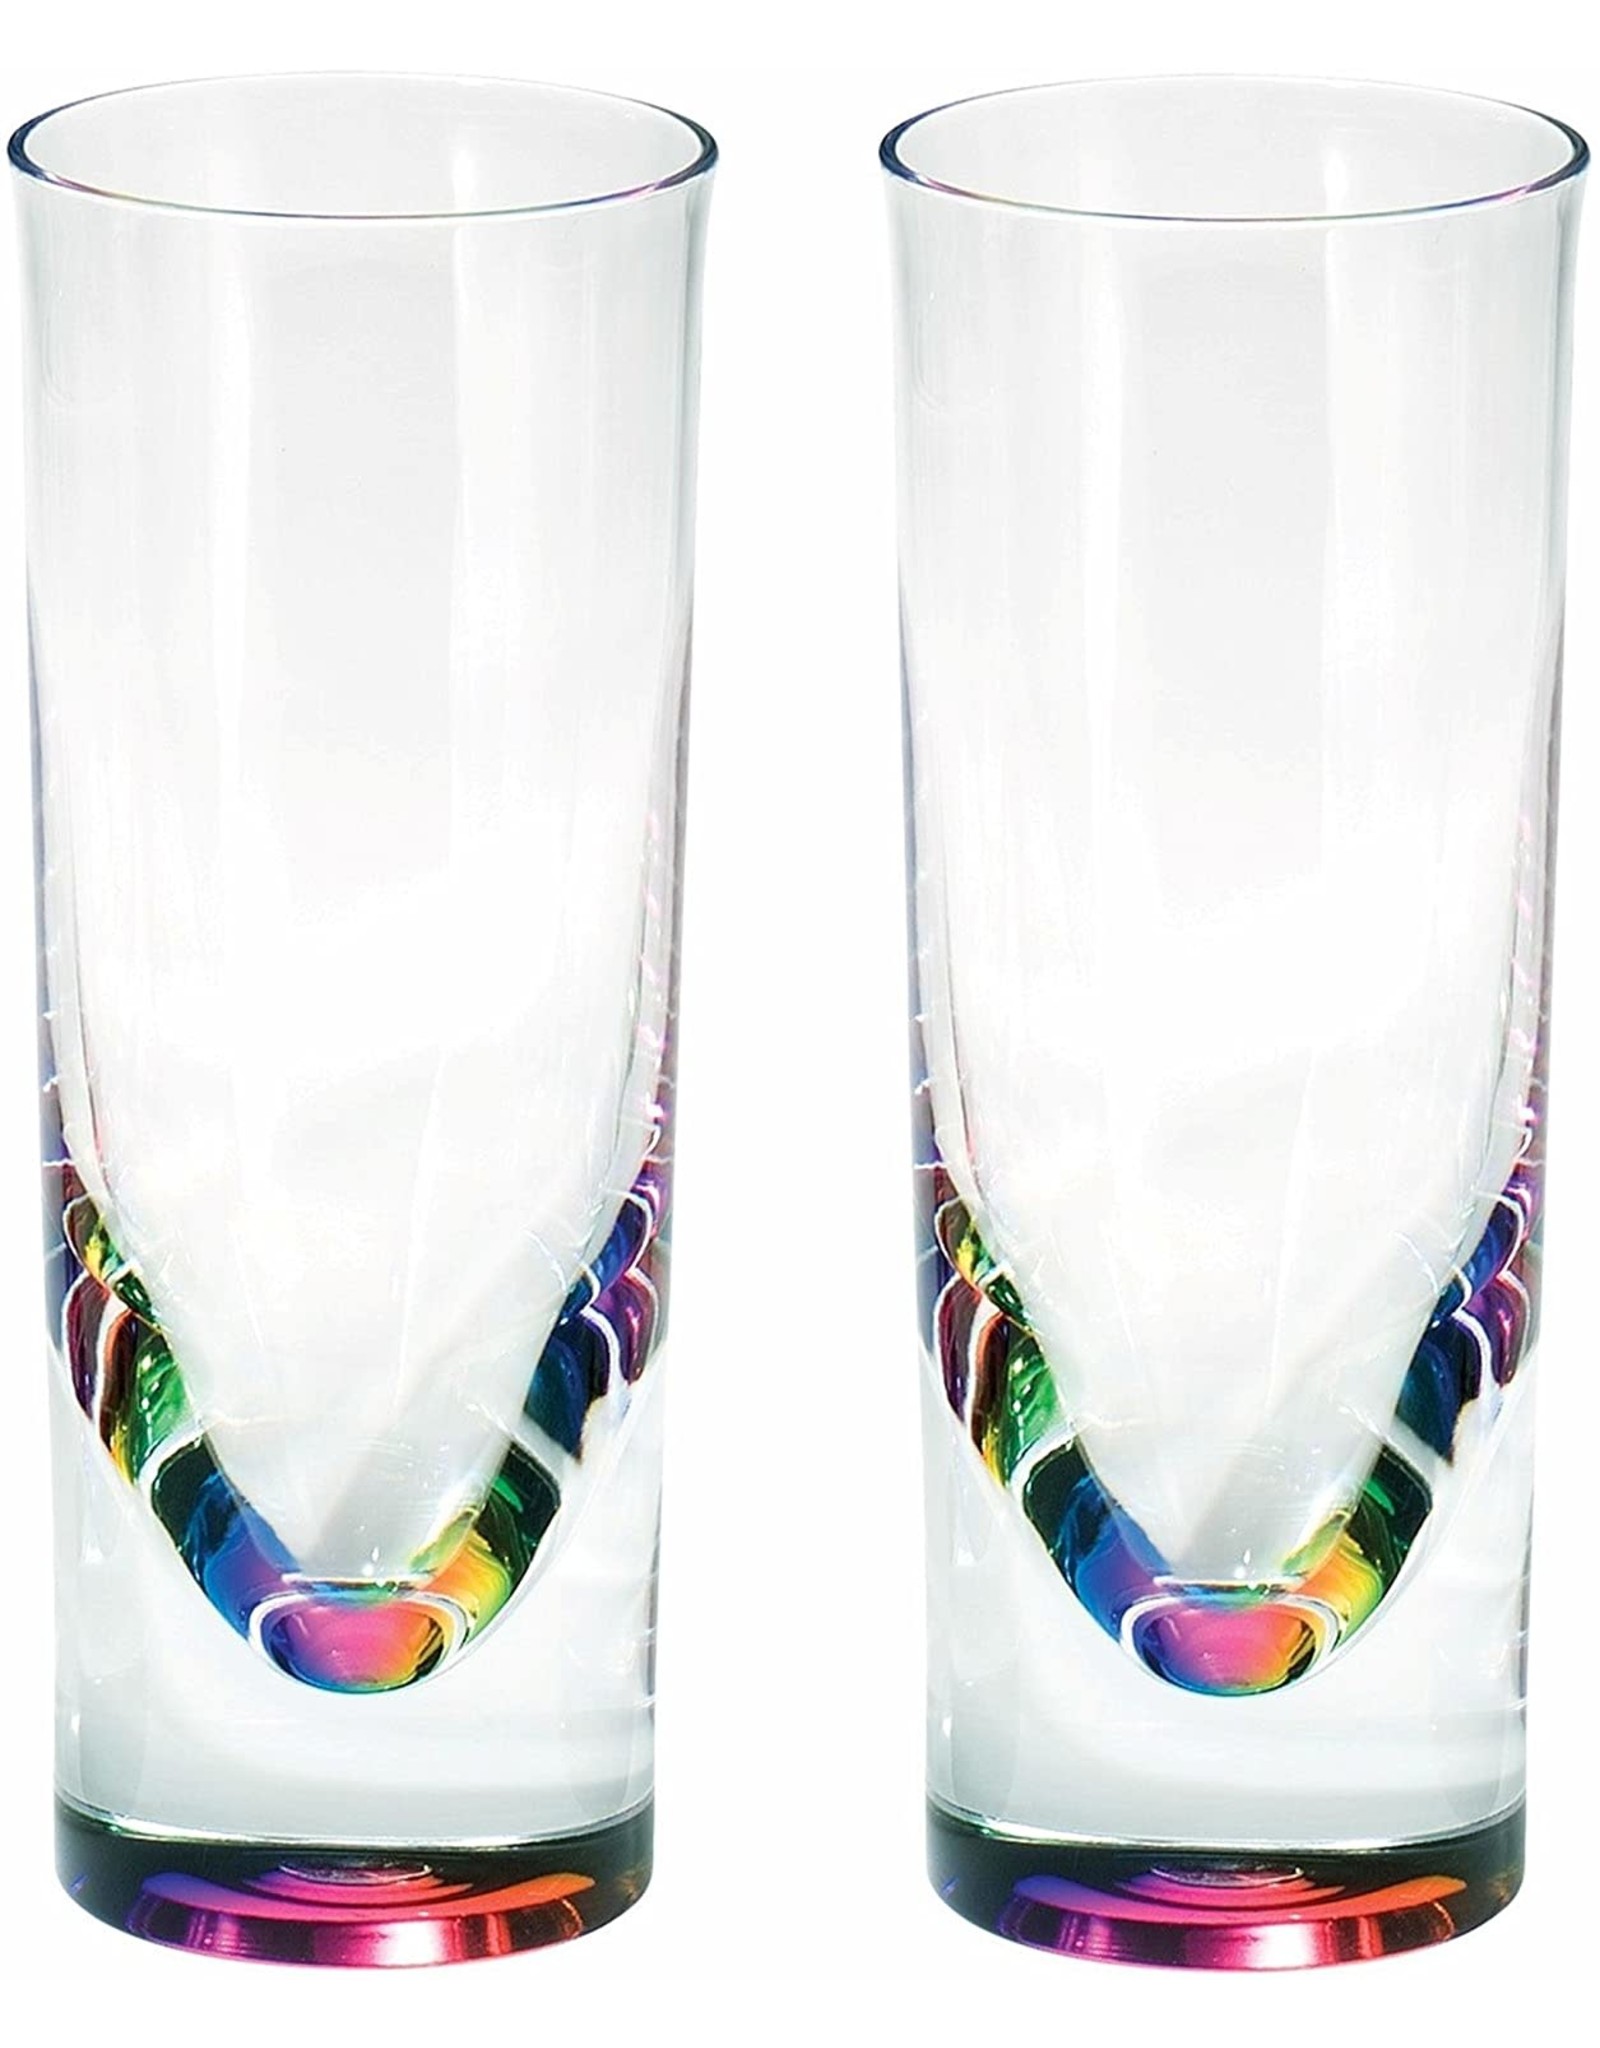 Merritt International Acrylic Rainbow Teardrop Tumbler 14oz Set Of 2